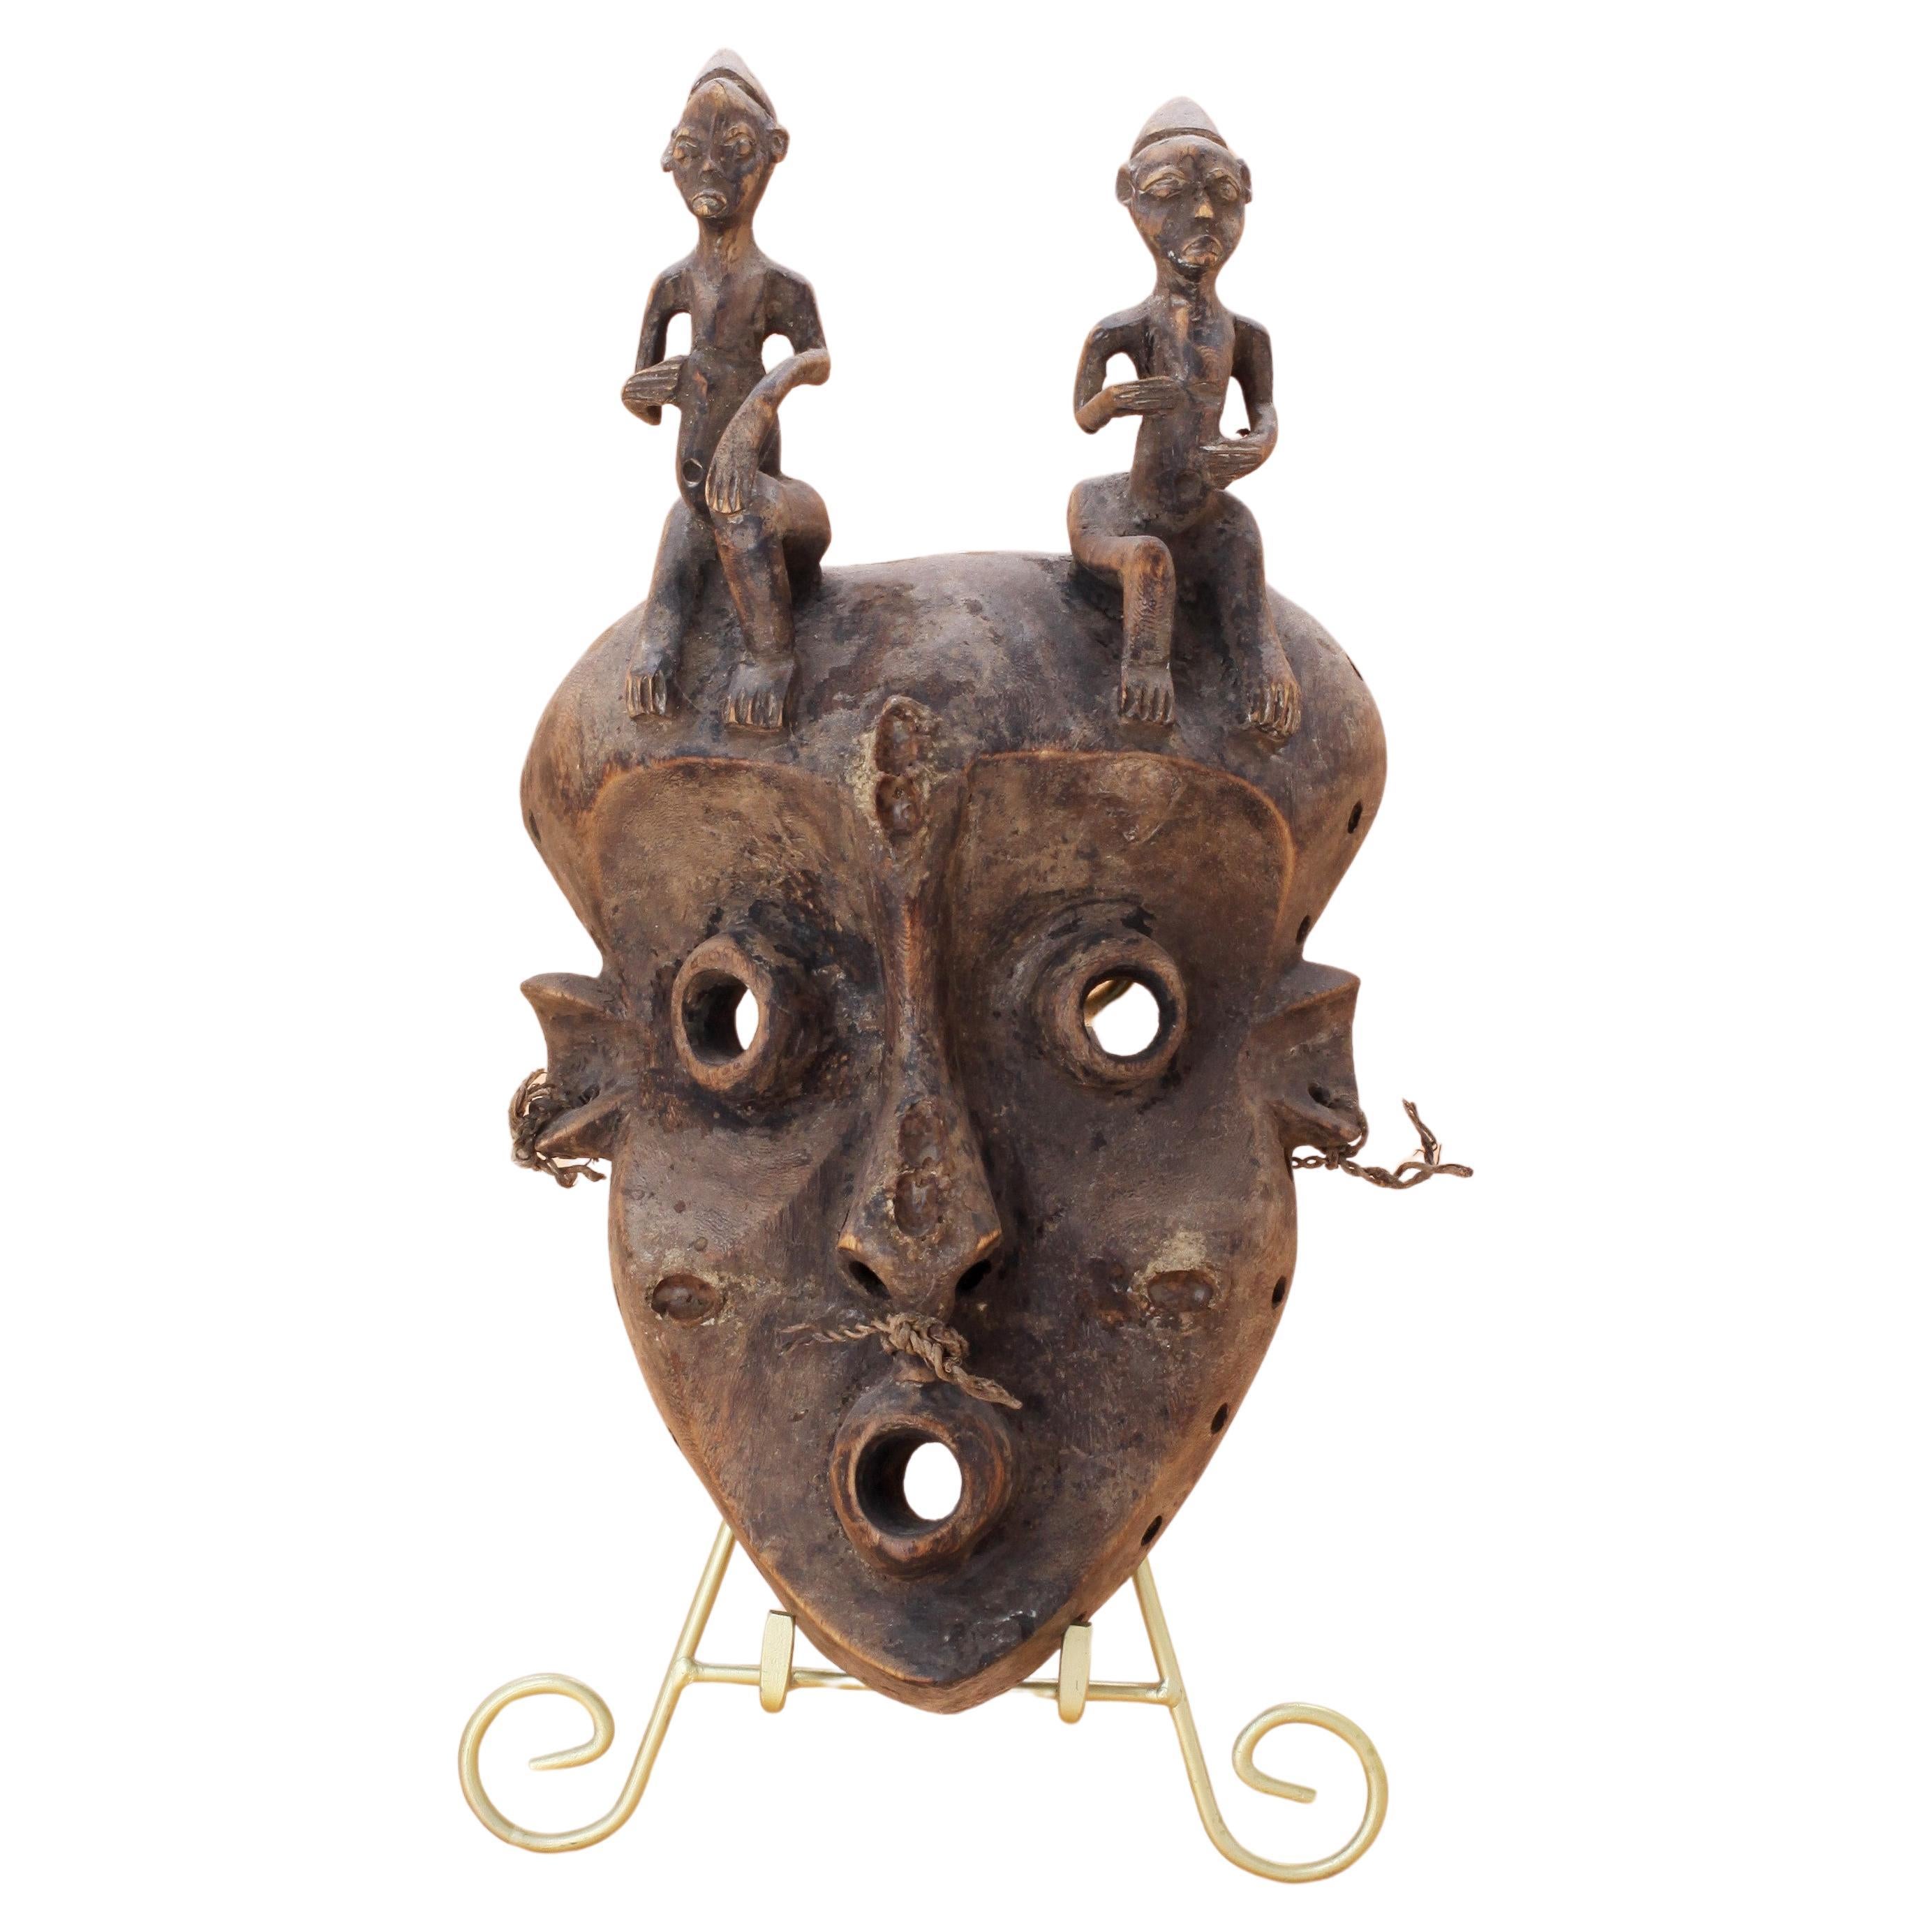 Pende-Maske „Circumcision Ceremonial“ aus dem frühen 20. Jahrhundert